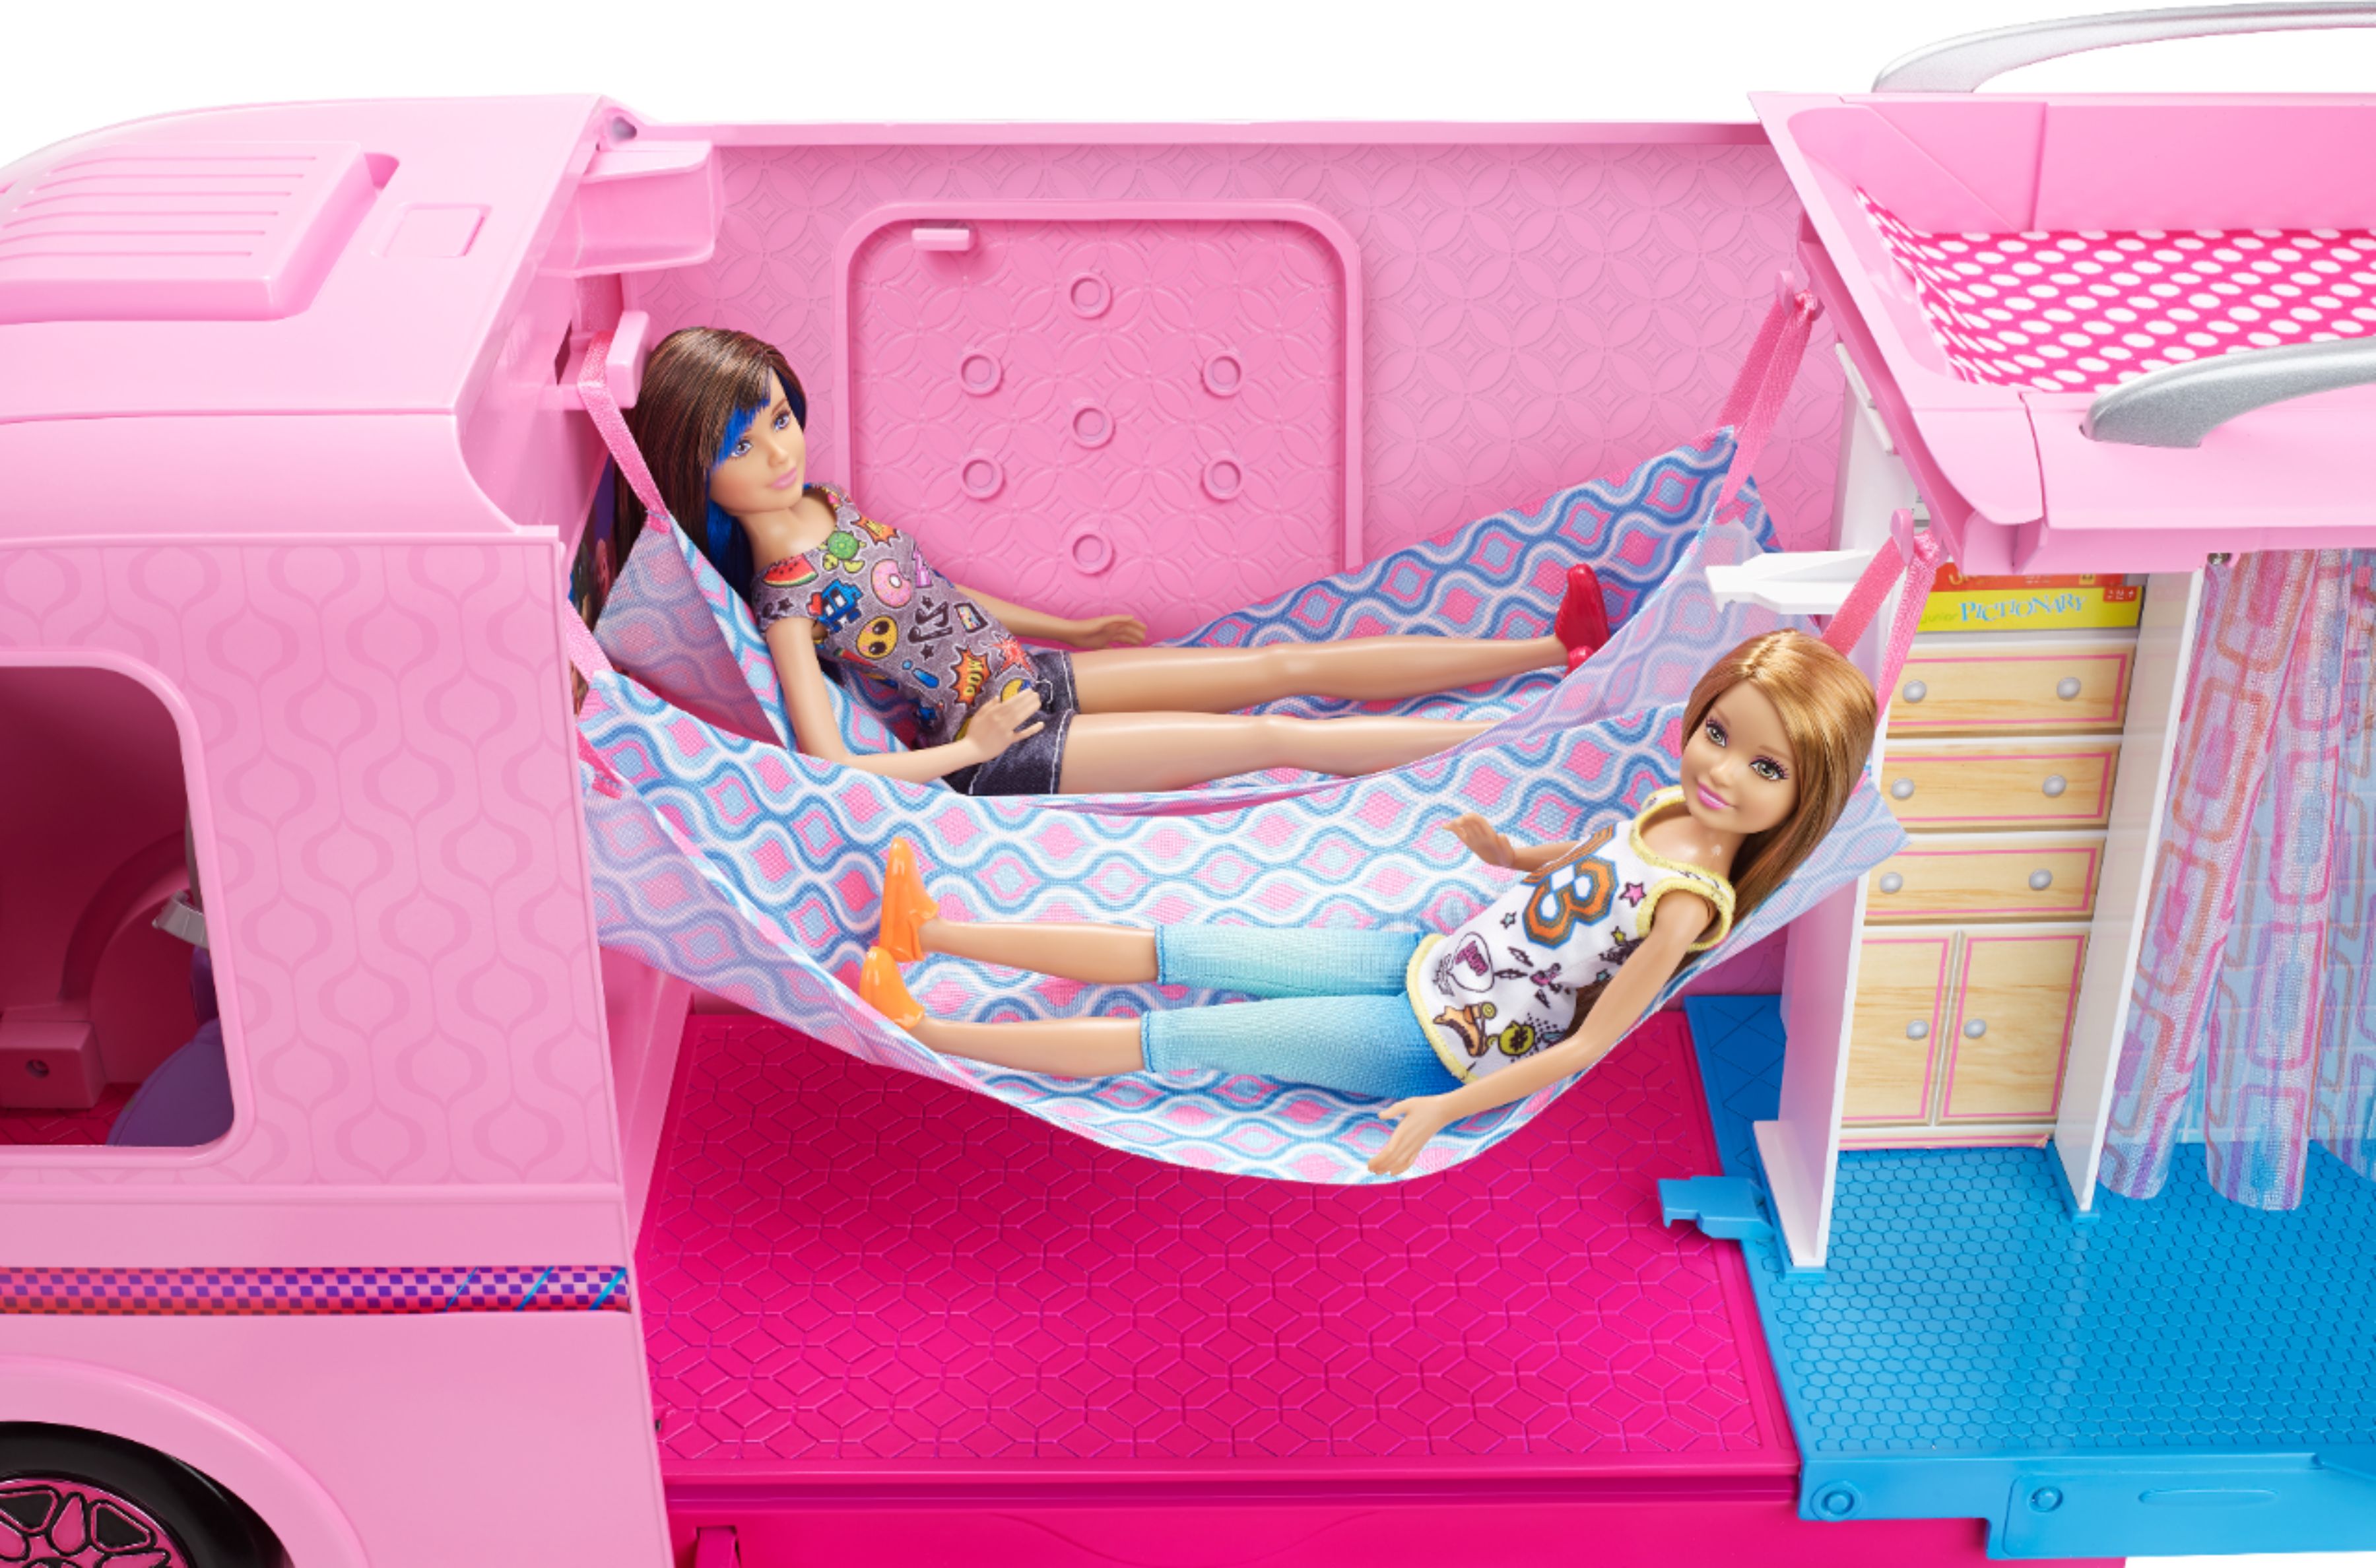 buy barbie camper